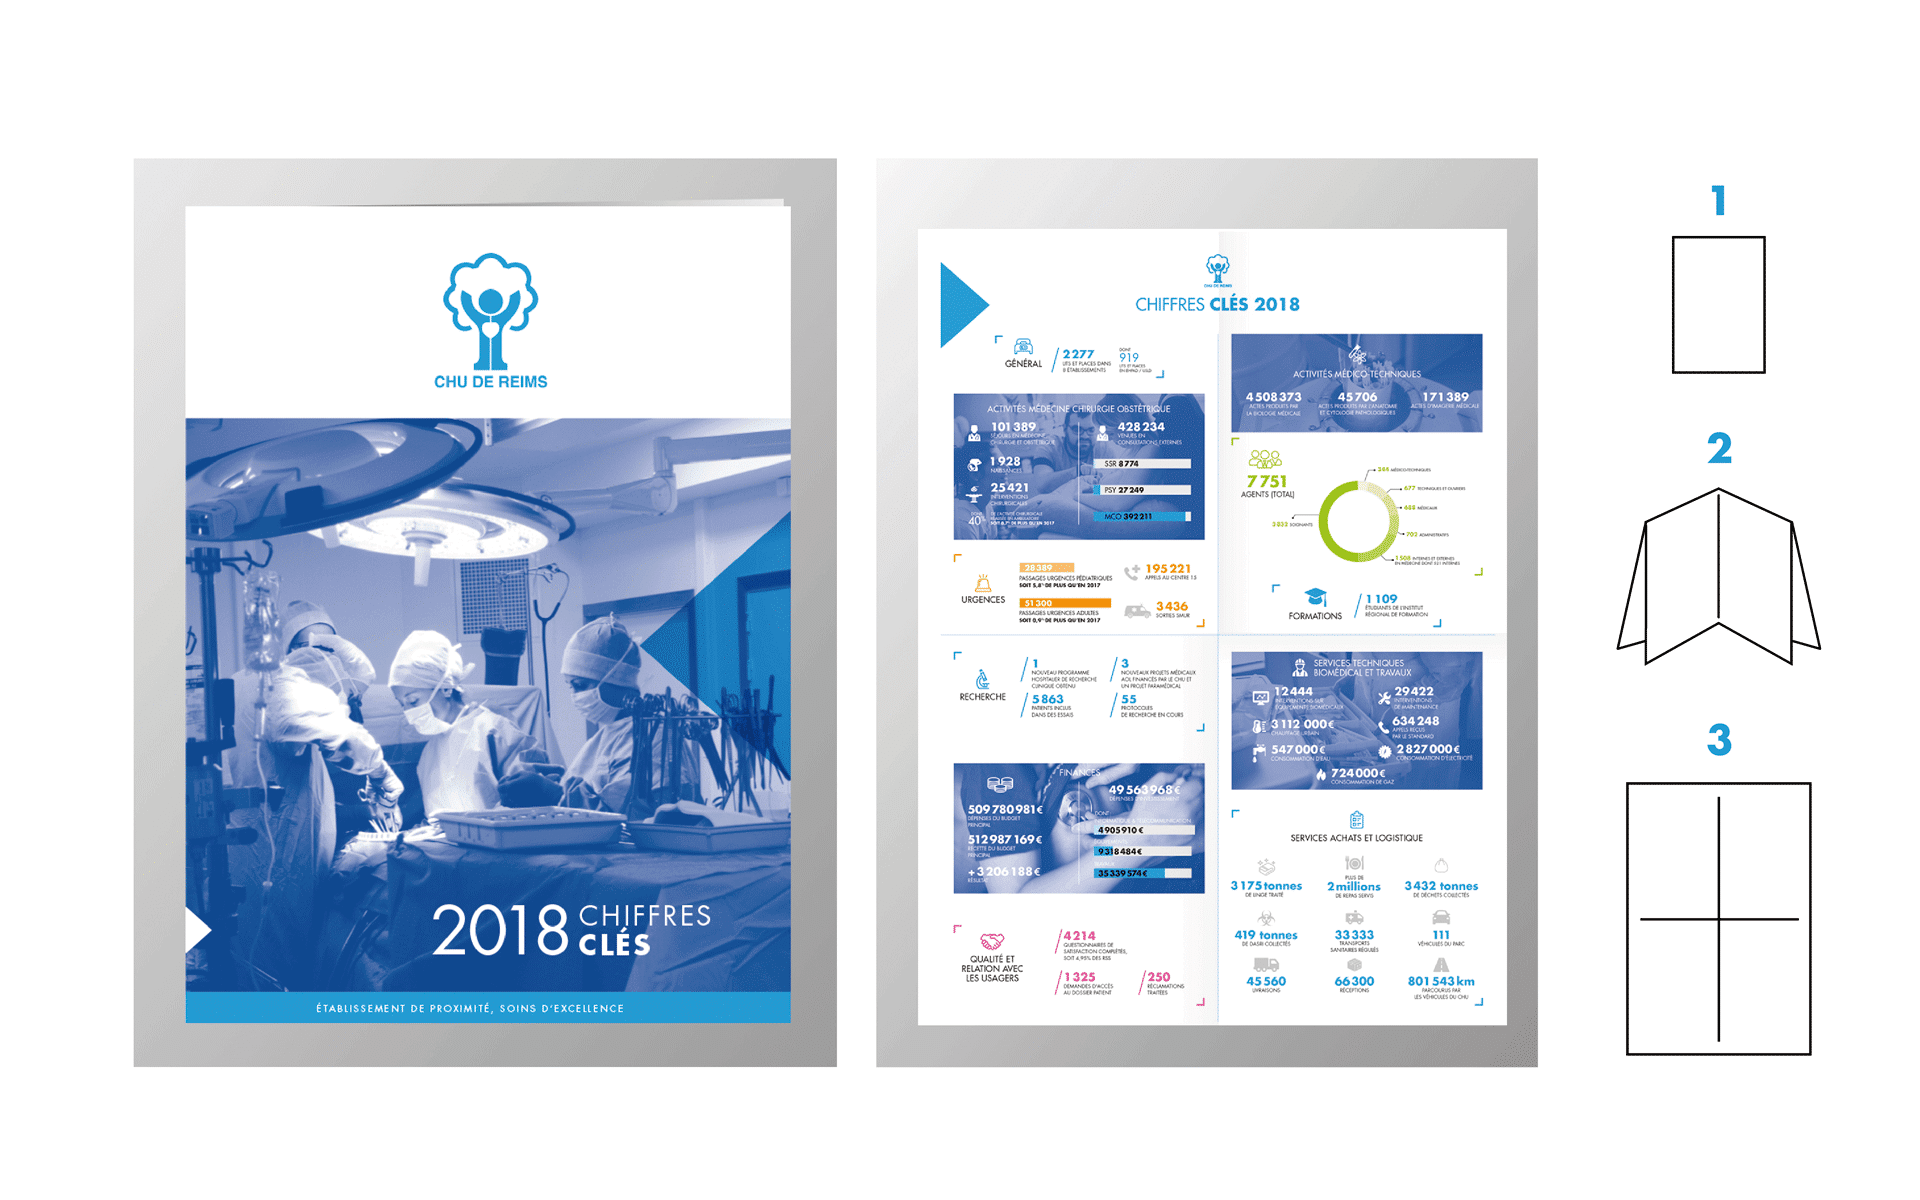 Document format poche du rapport d'activité 2018 CHU Reims, mise en page print, réalisée par l'agence de communication print et digitale Siouxe, à Paris.